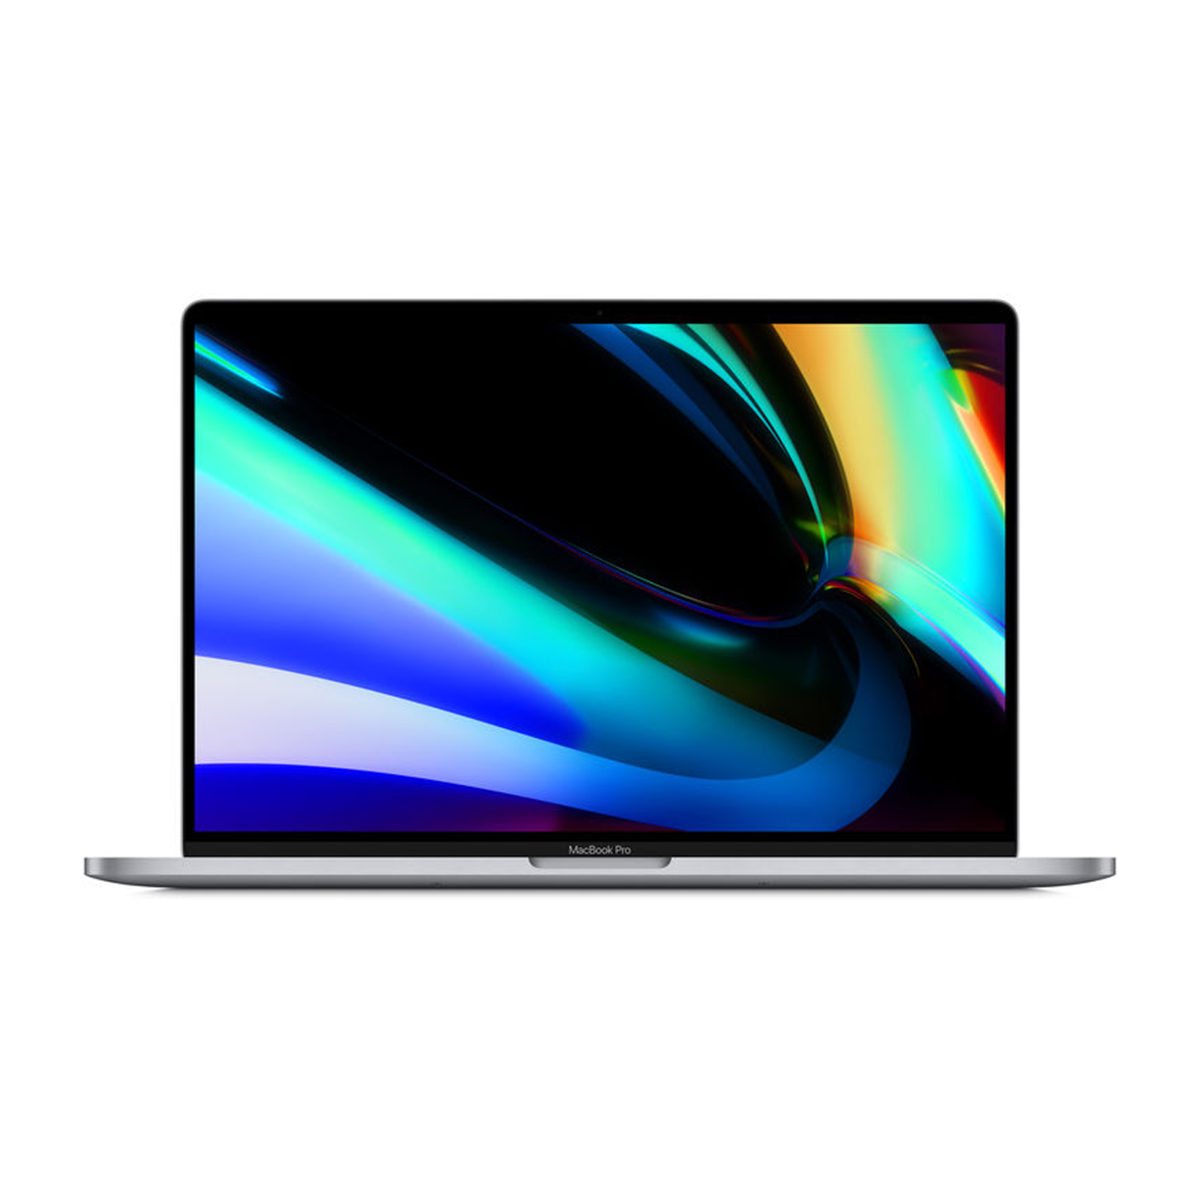 لپ تاپ اپل 16 اینچی مدل MacBook Pro Z0XZ004R9 2019 i7 9750H 32GB 512GB